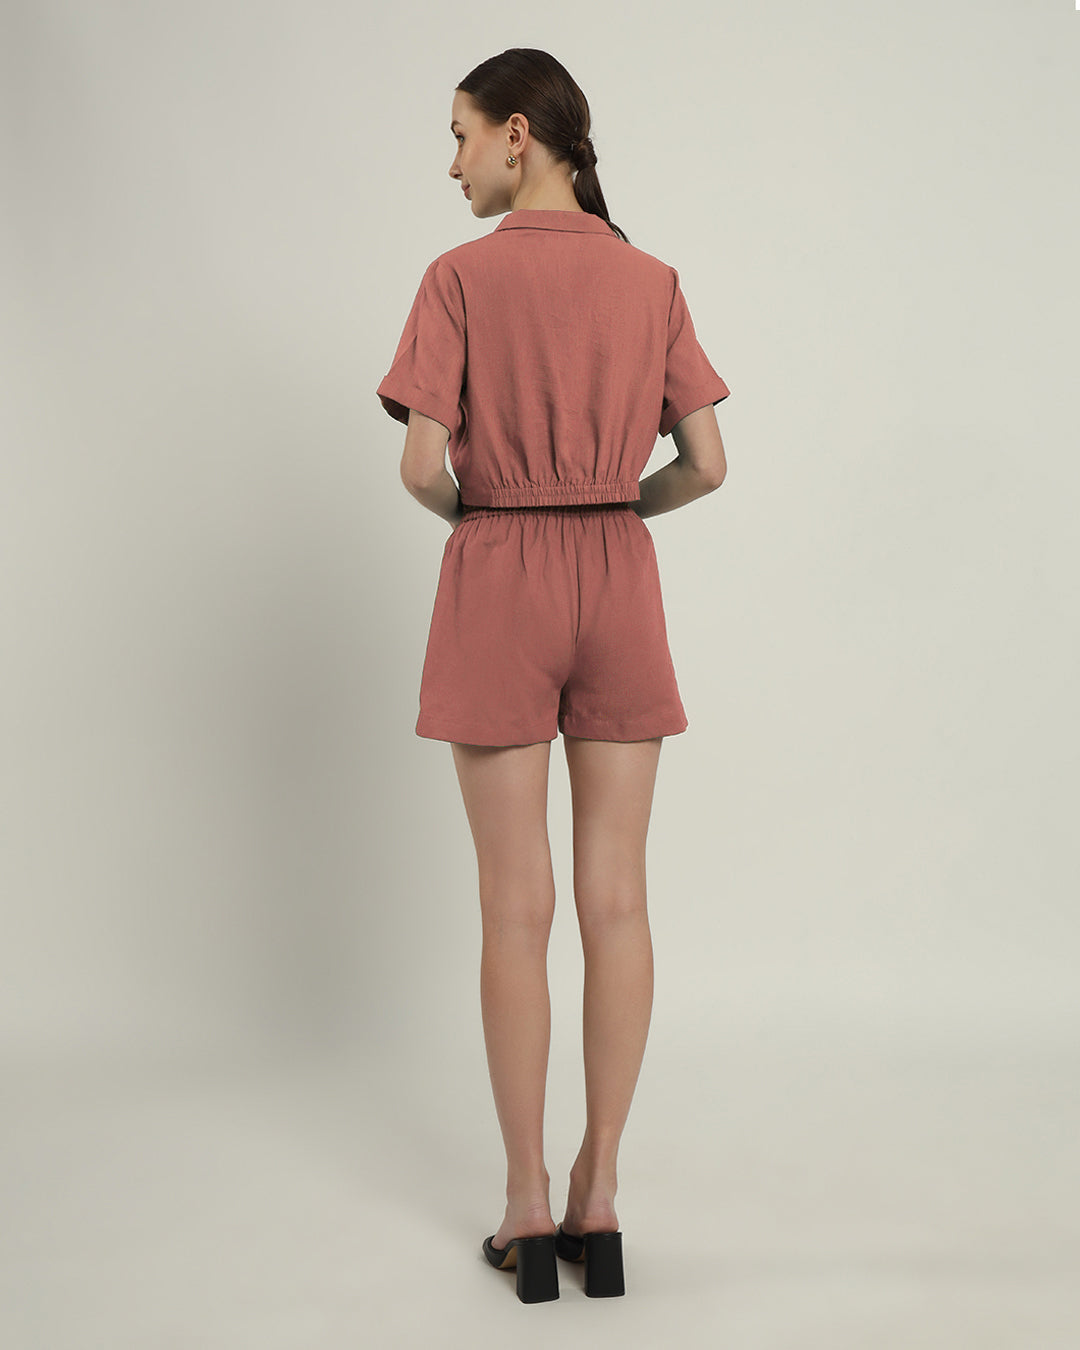 Shorts Matching Set- Ivory Pink Lapel Collar